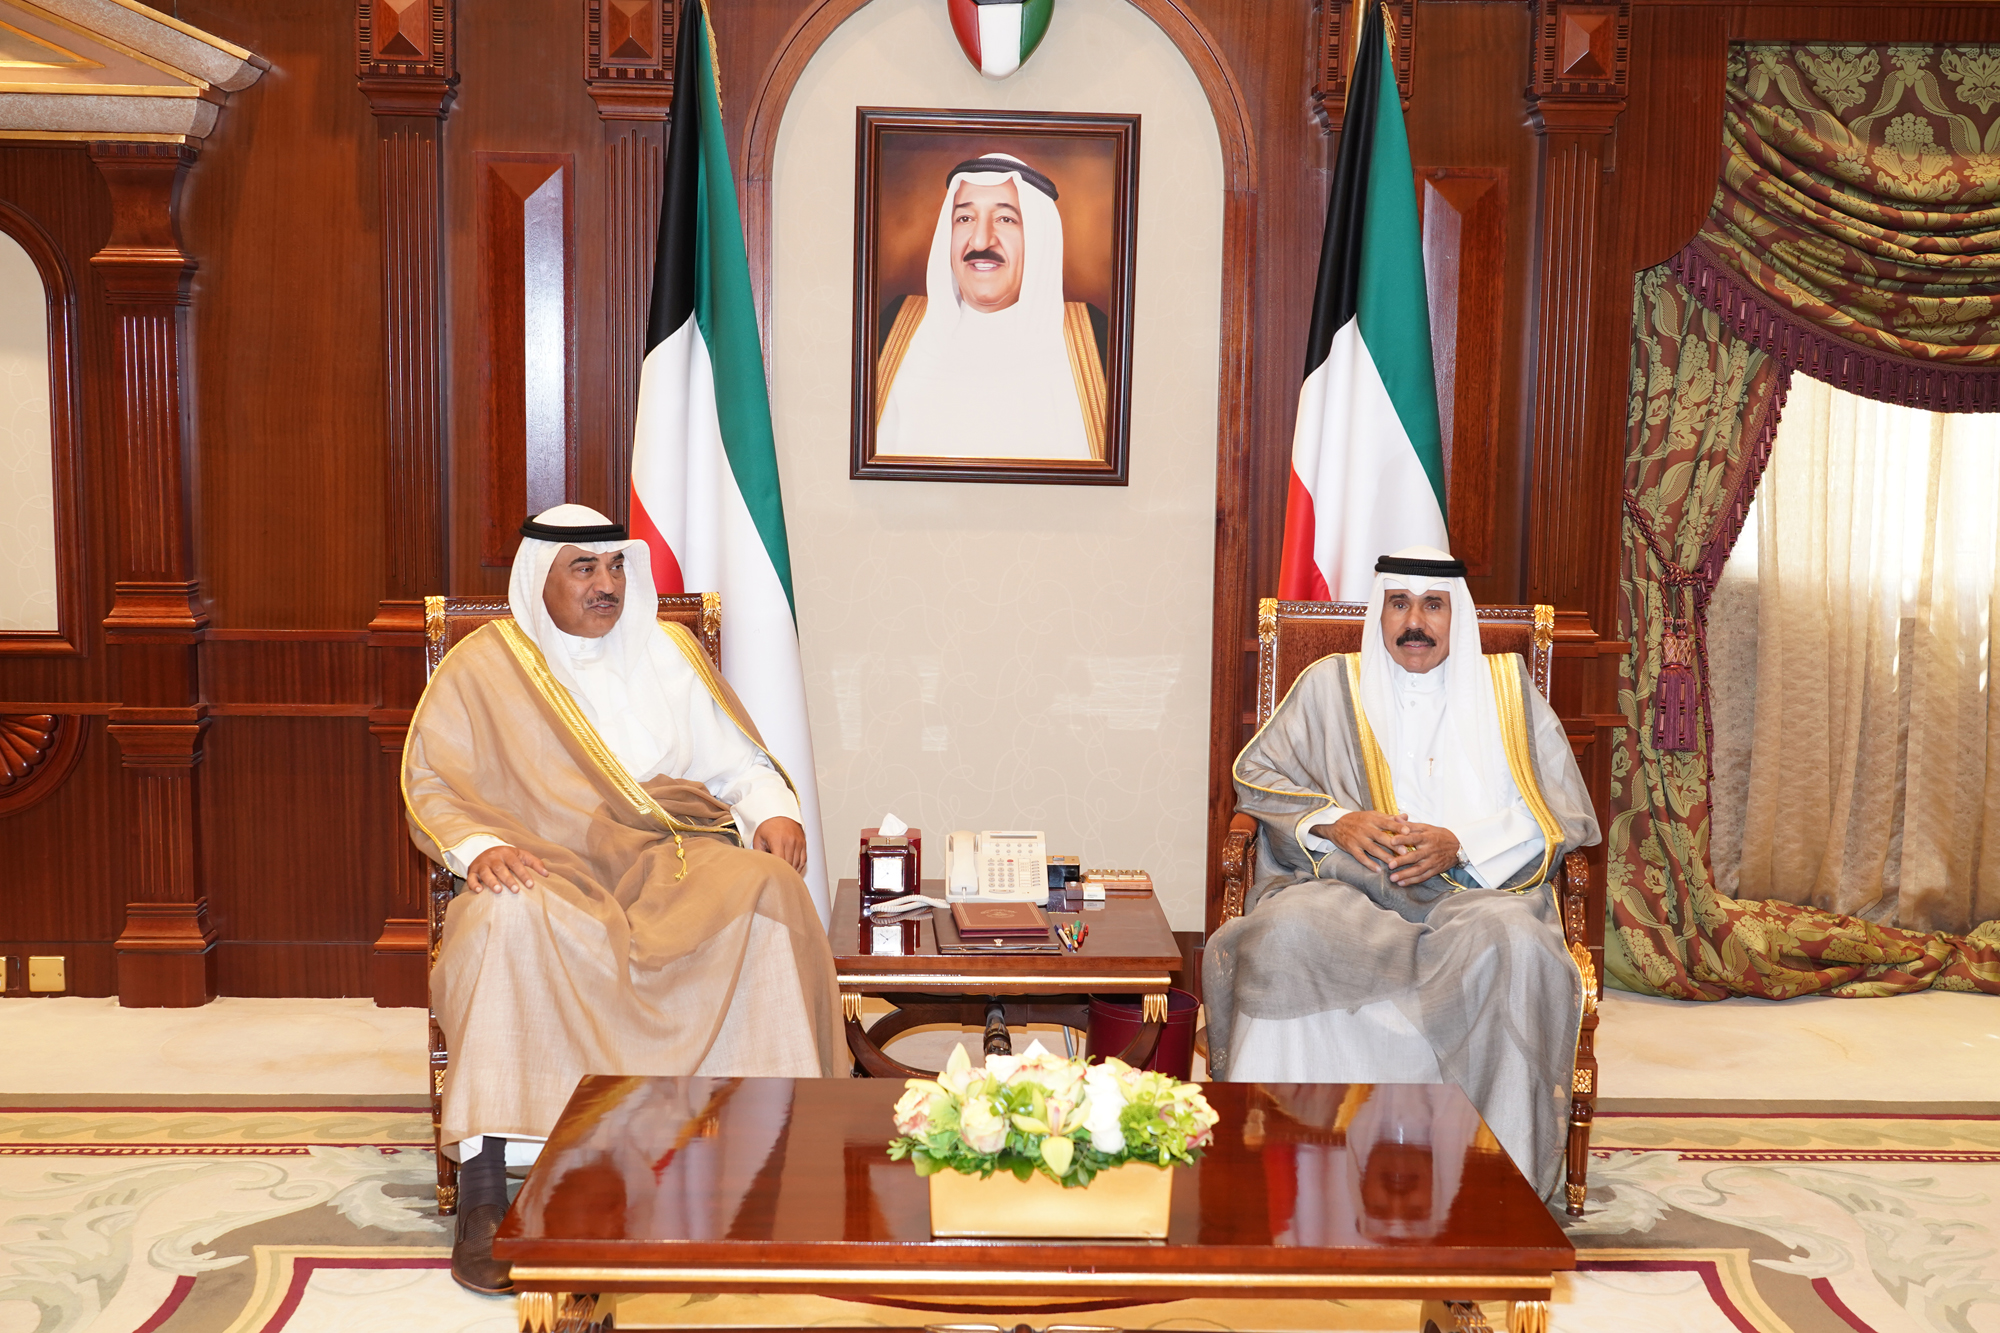 His Highness the Crown Prince Sheikh Nawaf Al-Ahmad Al-Jaber Al-Sabah received Deputy Premier and Foreign Minister Sheikh Sabah Al-Khaled Al-Hamad Al-Sabah